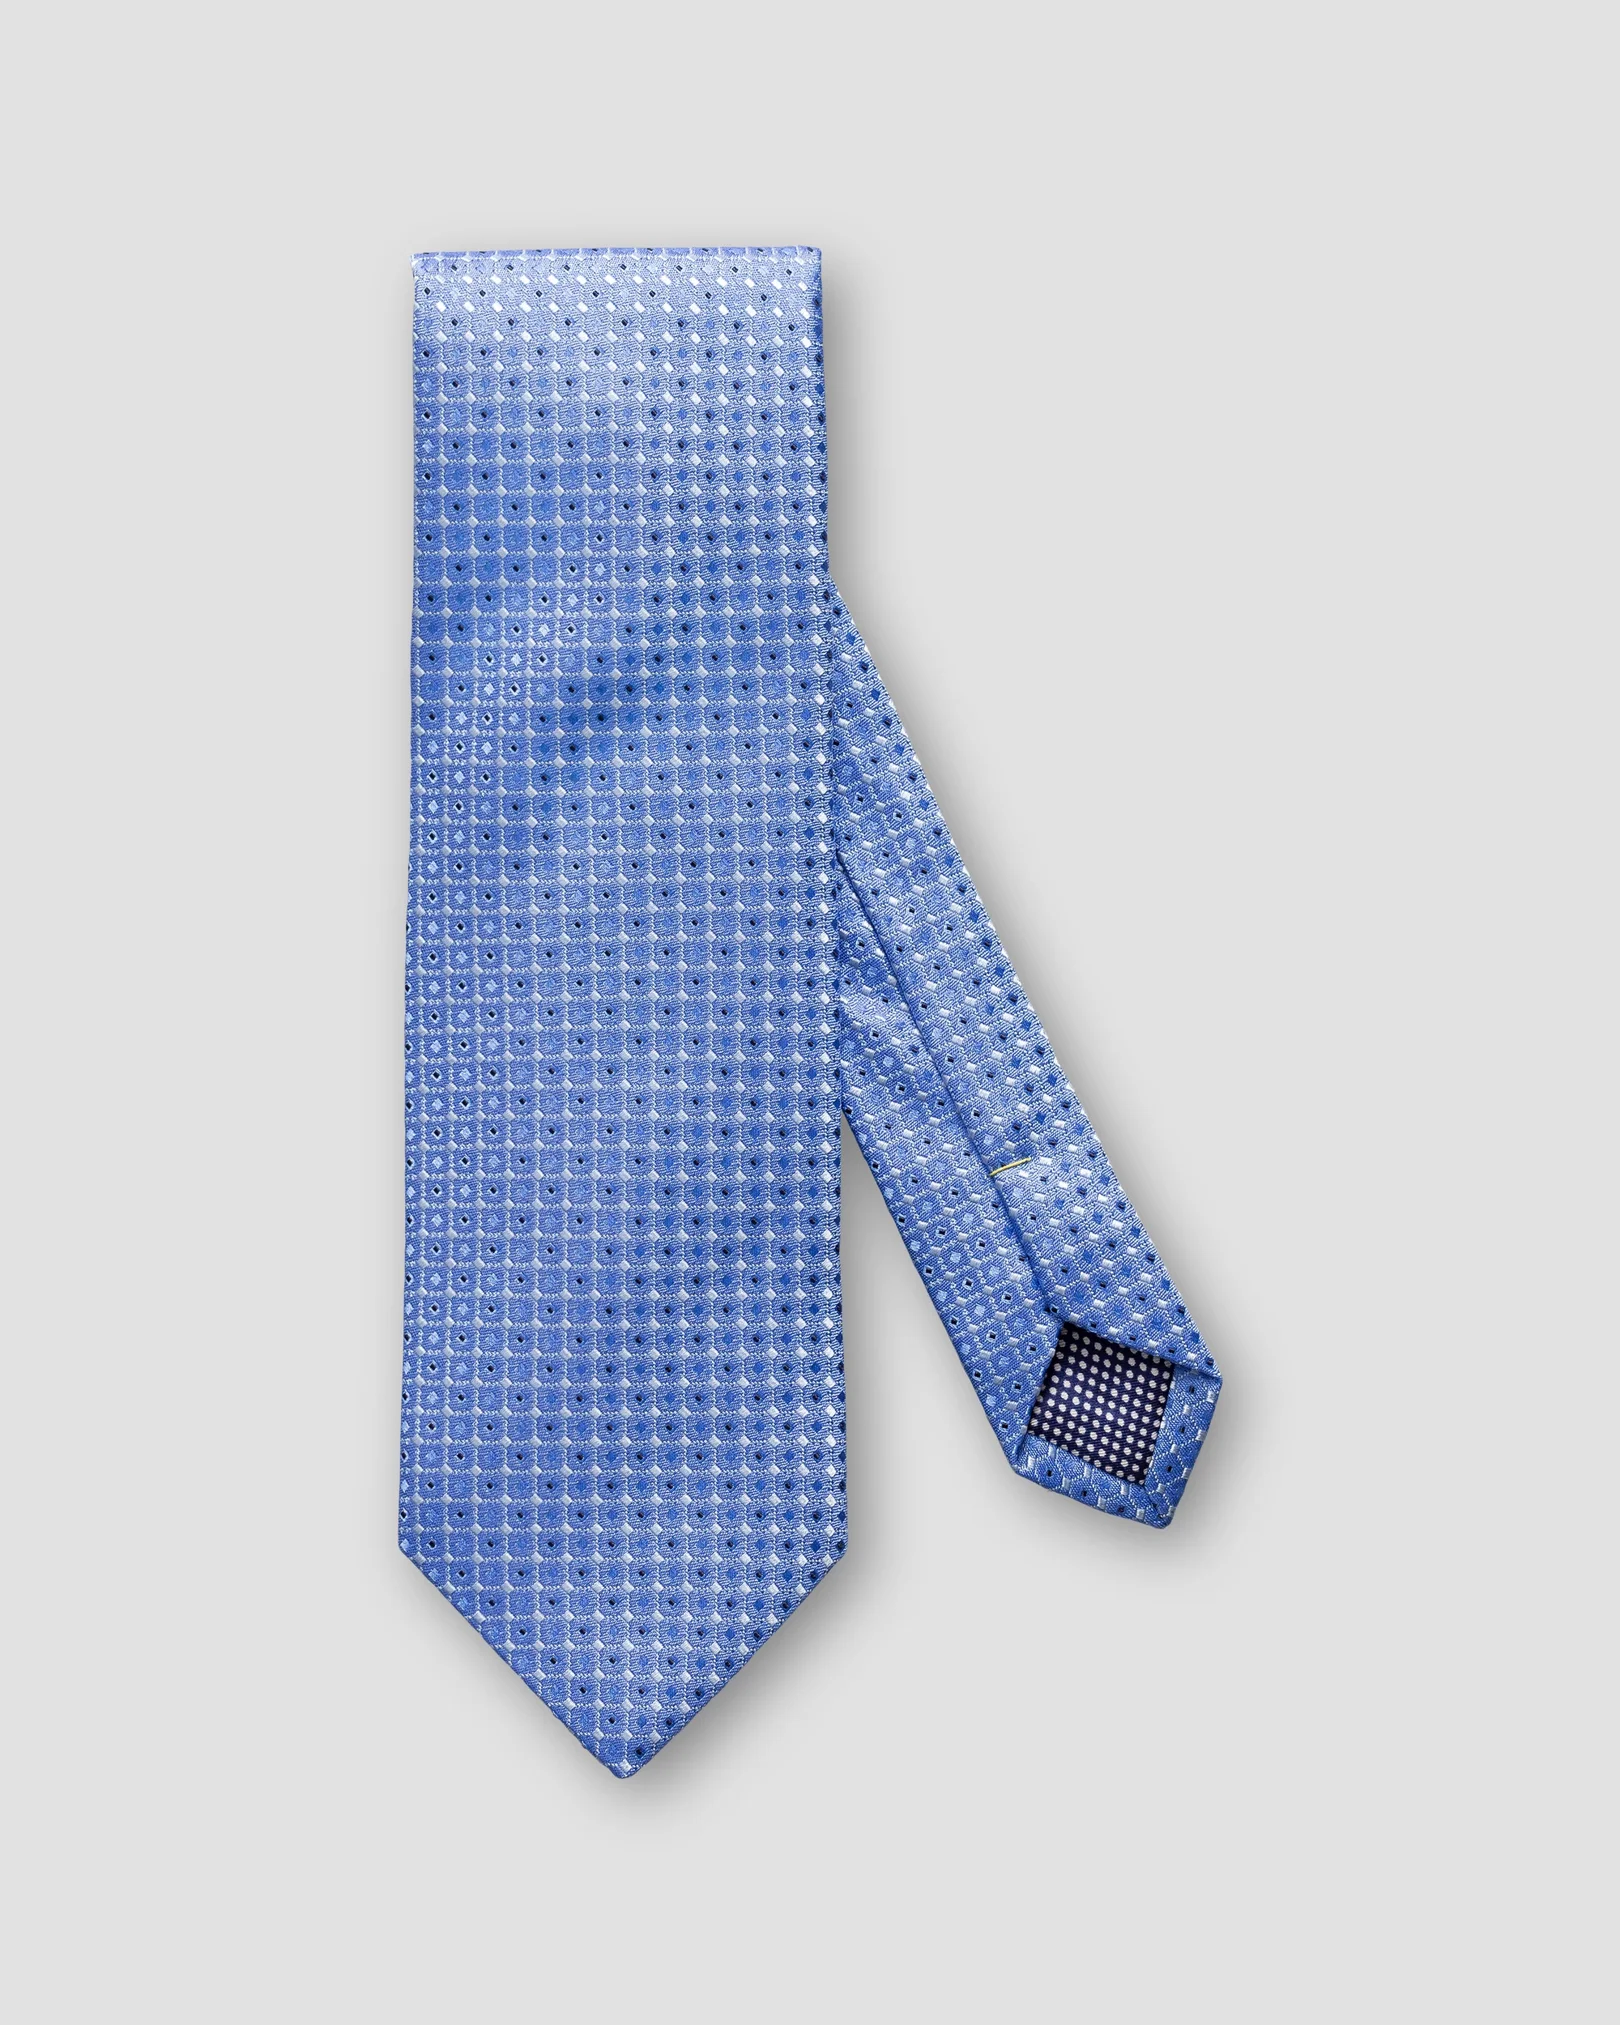 Eton - dark blue tie